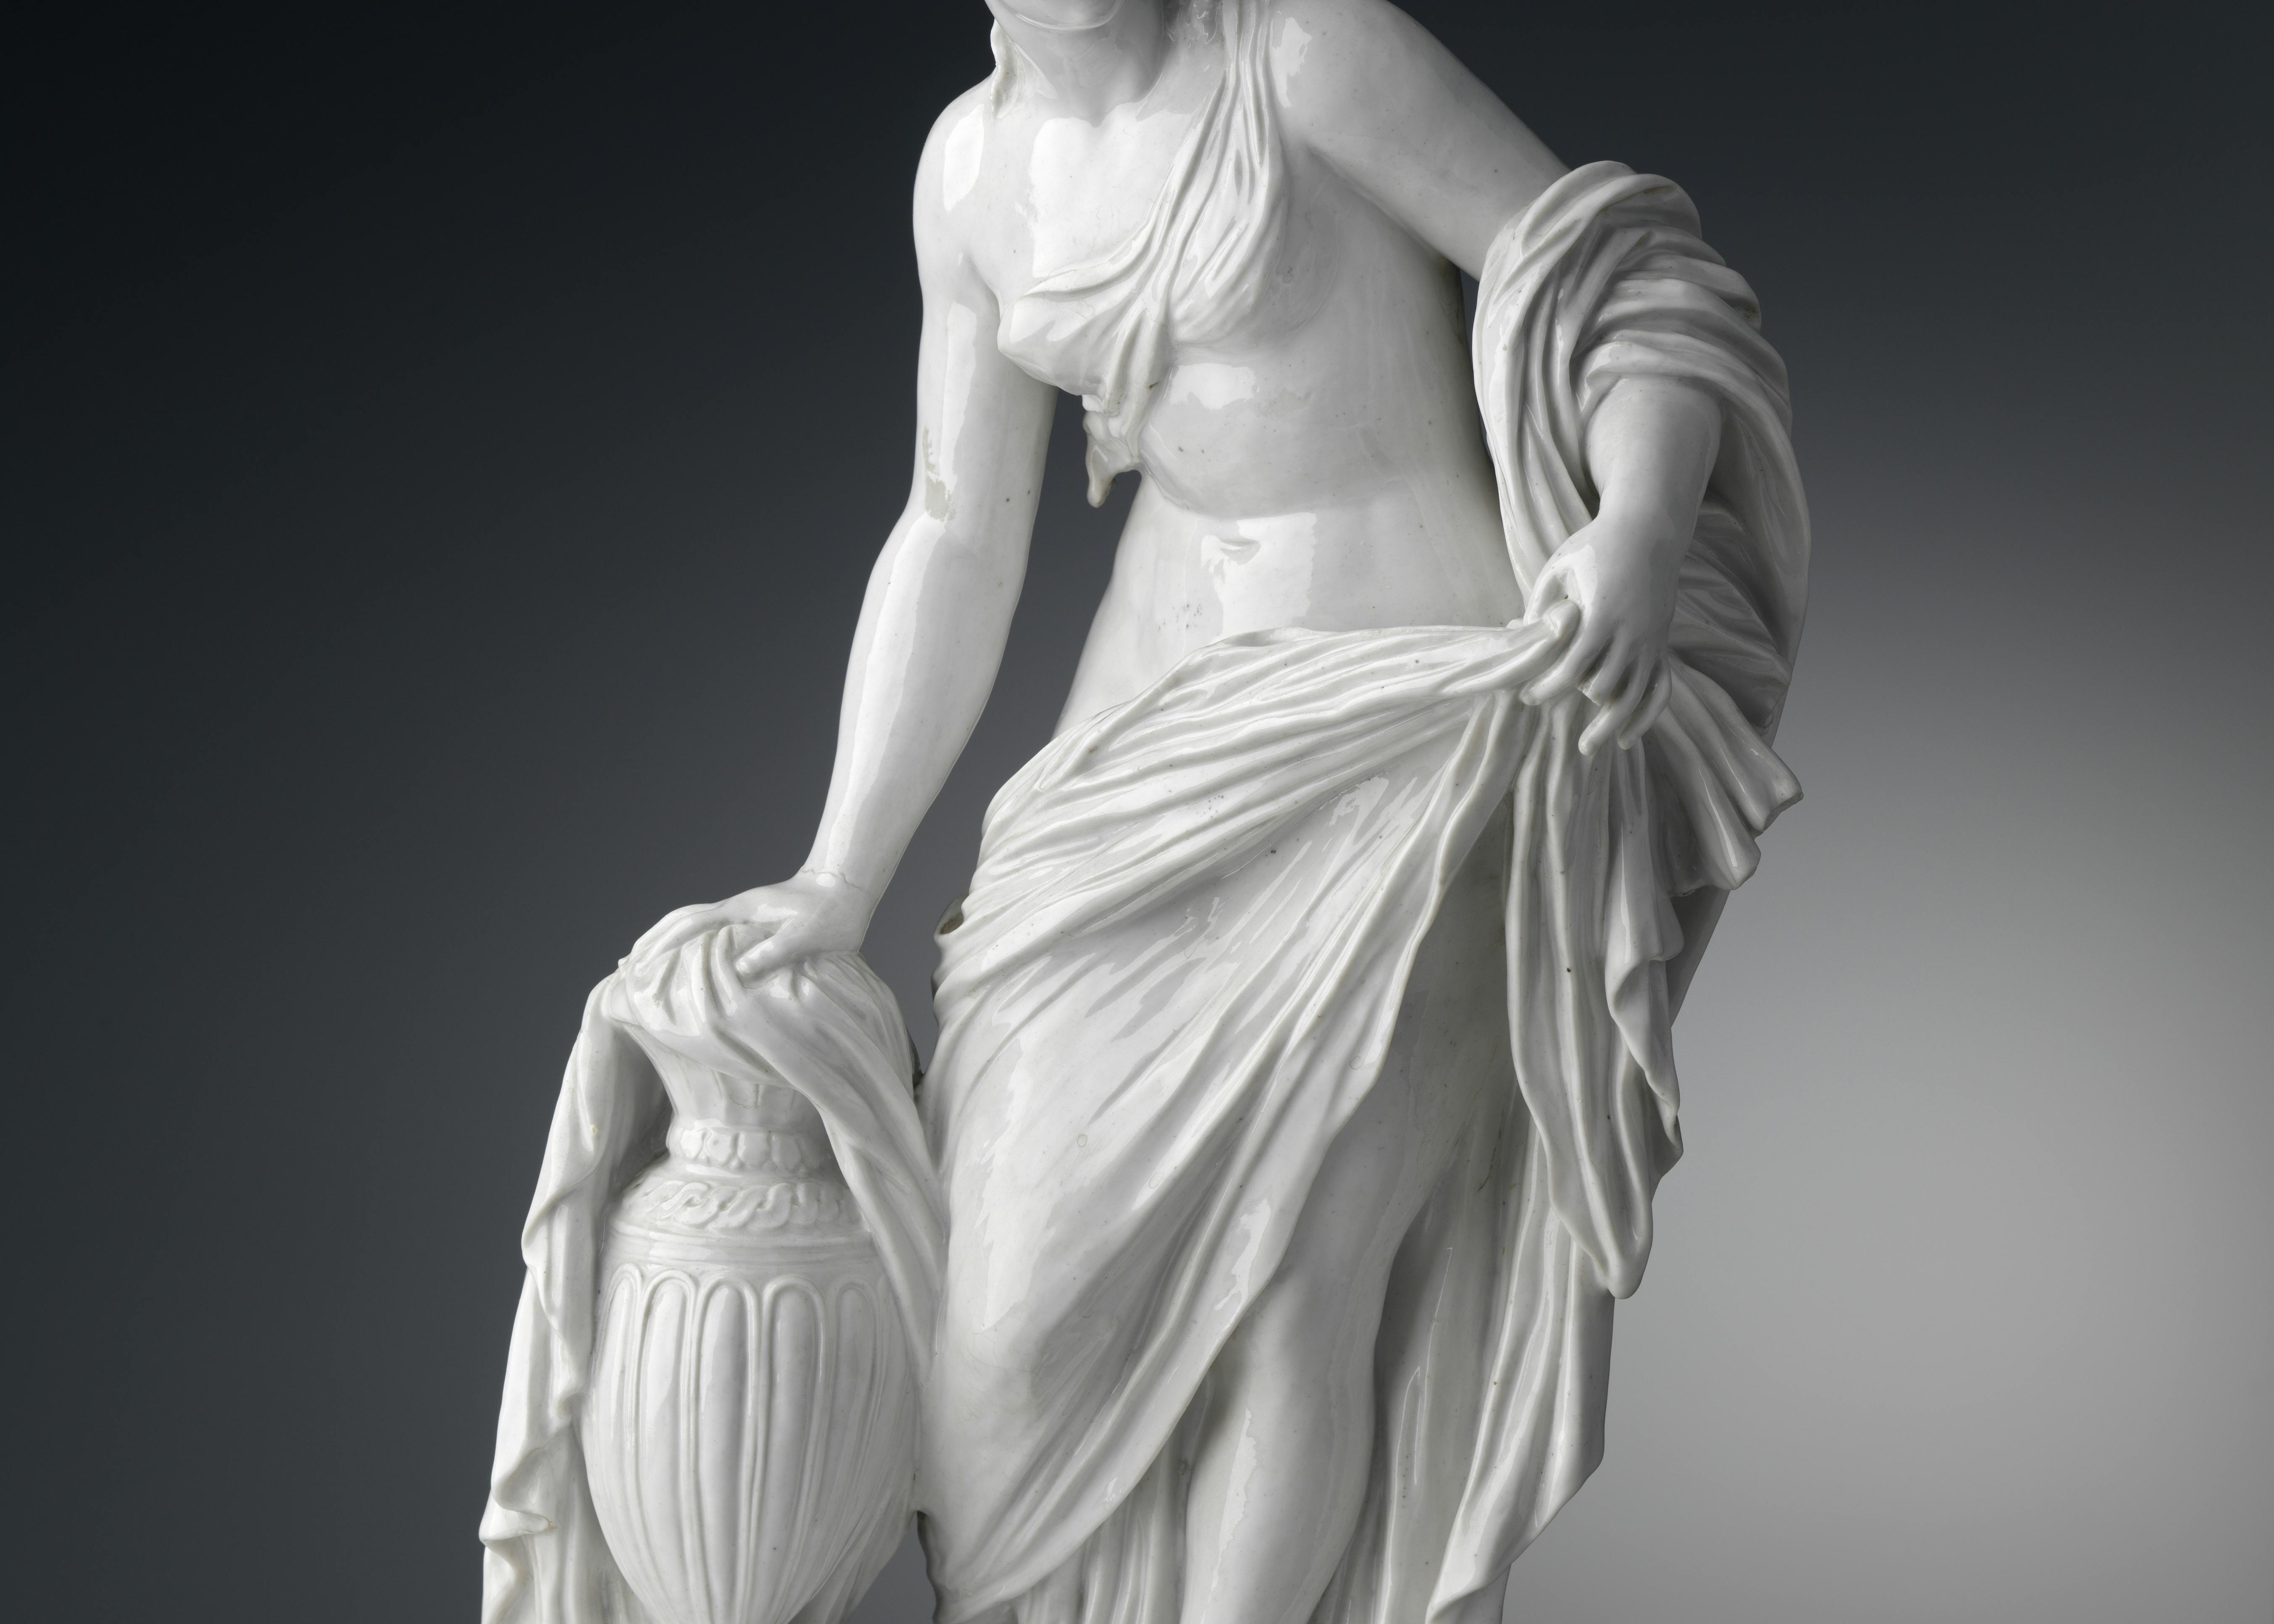 Scultura in porcellana bianca raffigurante una figura femminile avvolta in un ampio panneggio